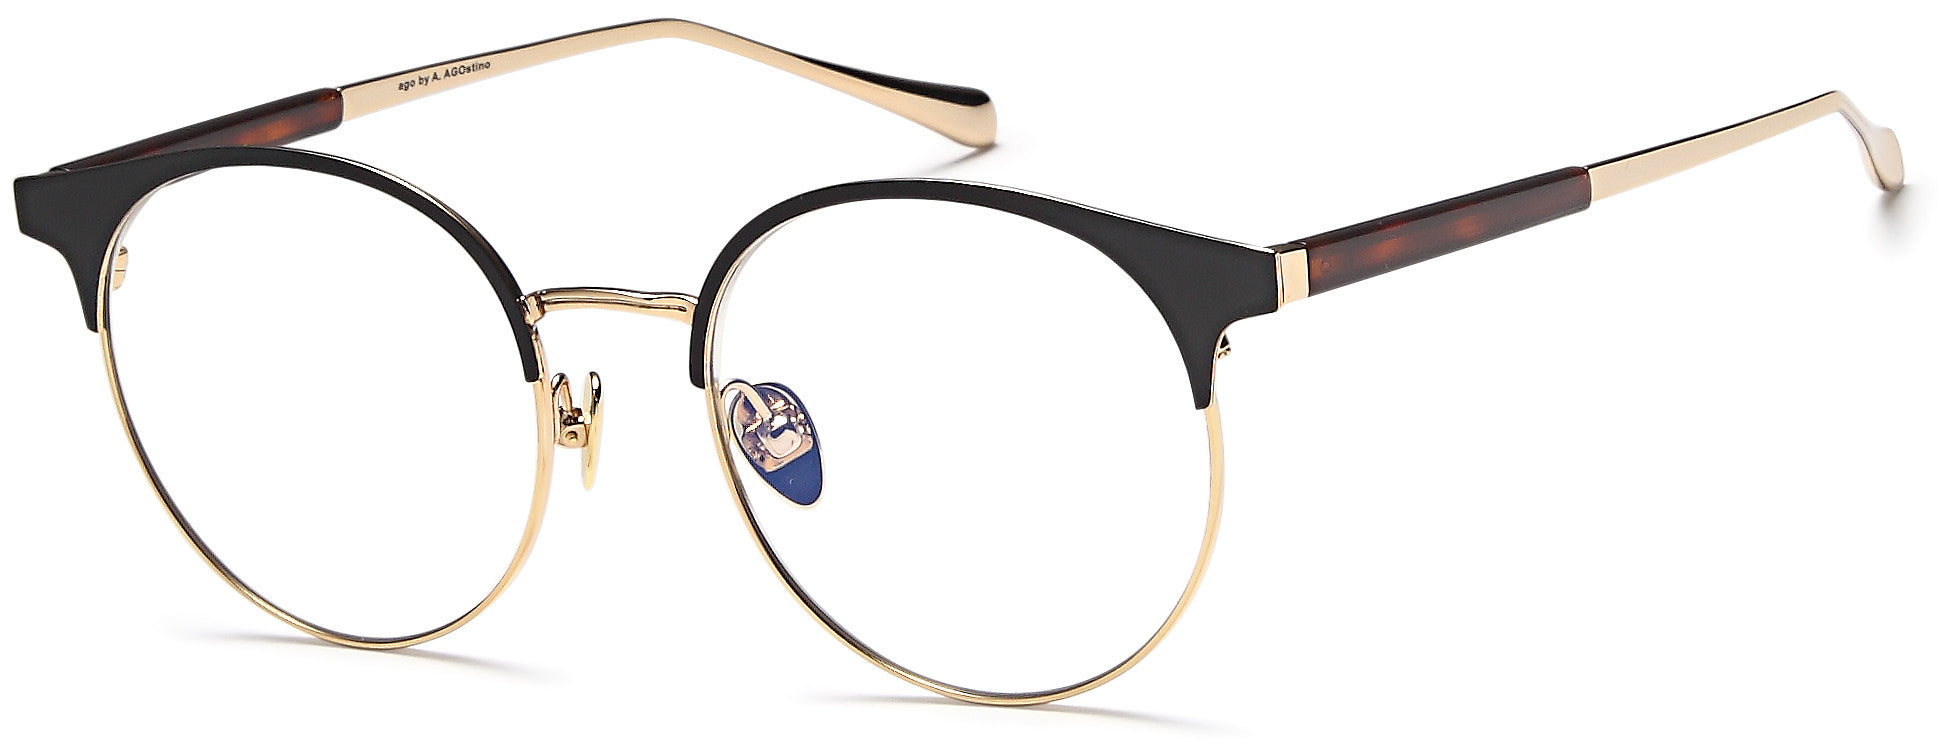 AGO Eyeglasses MF90011 - Go-Readers.com